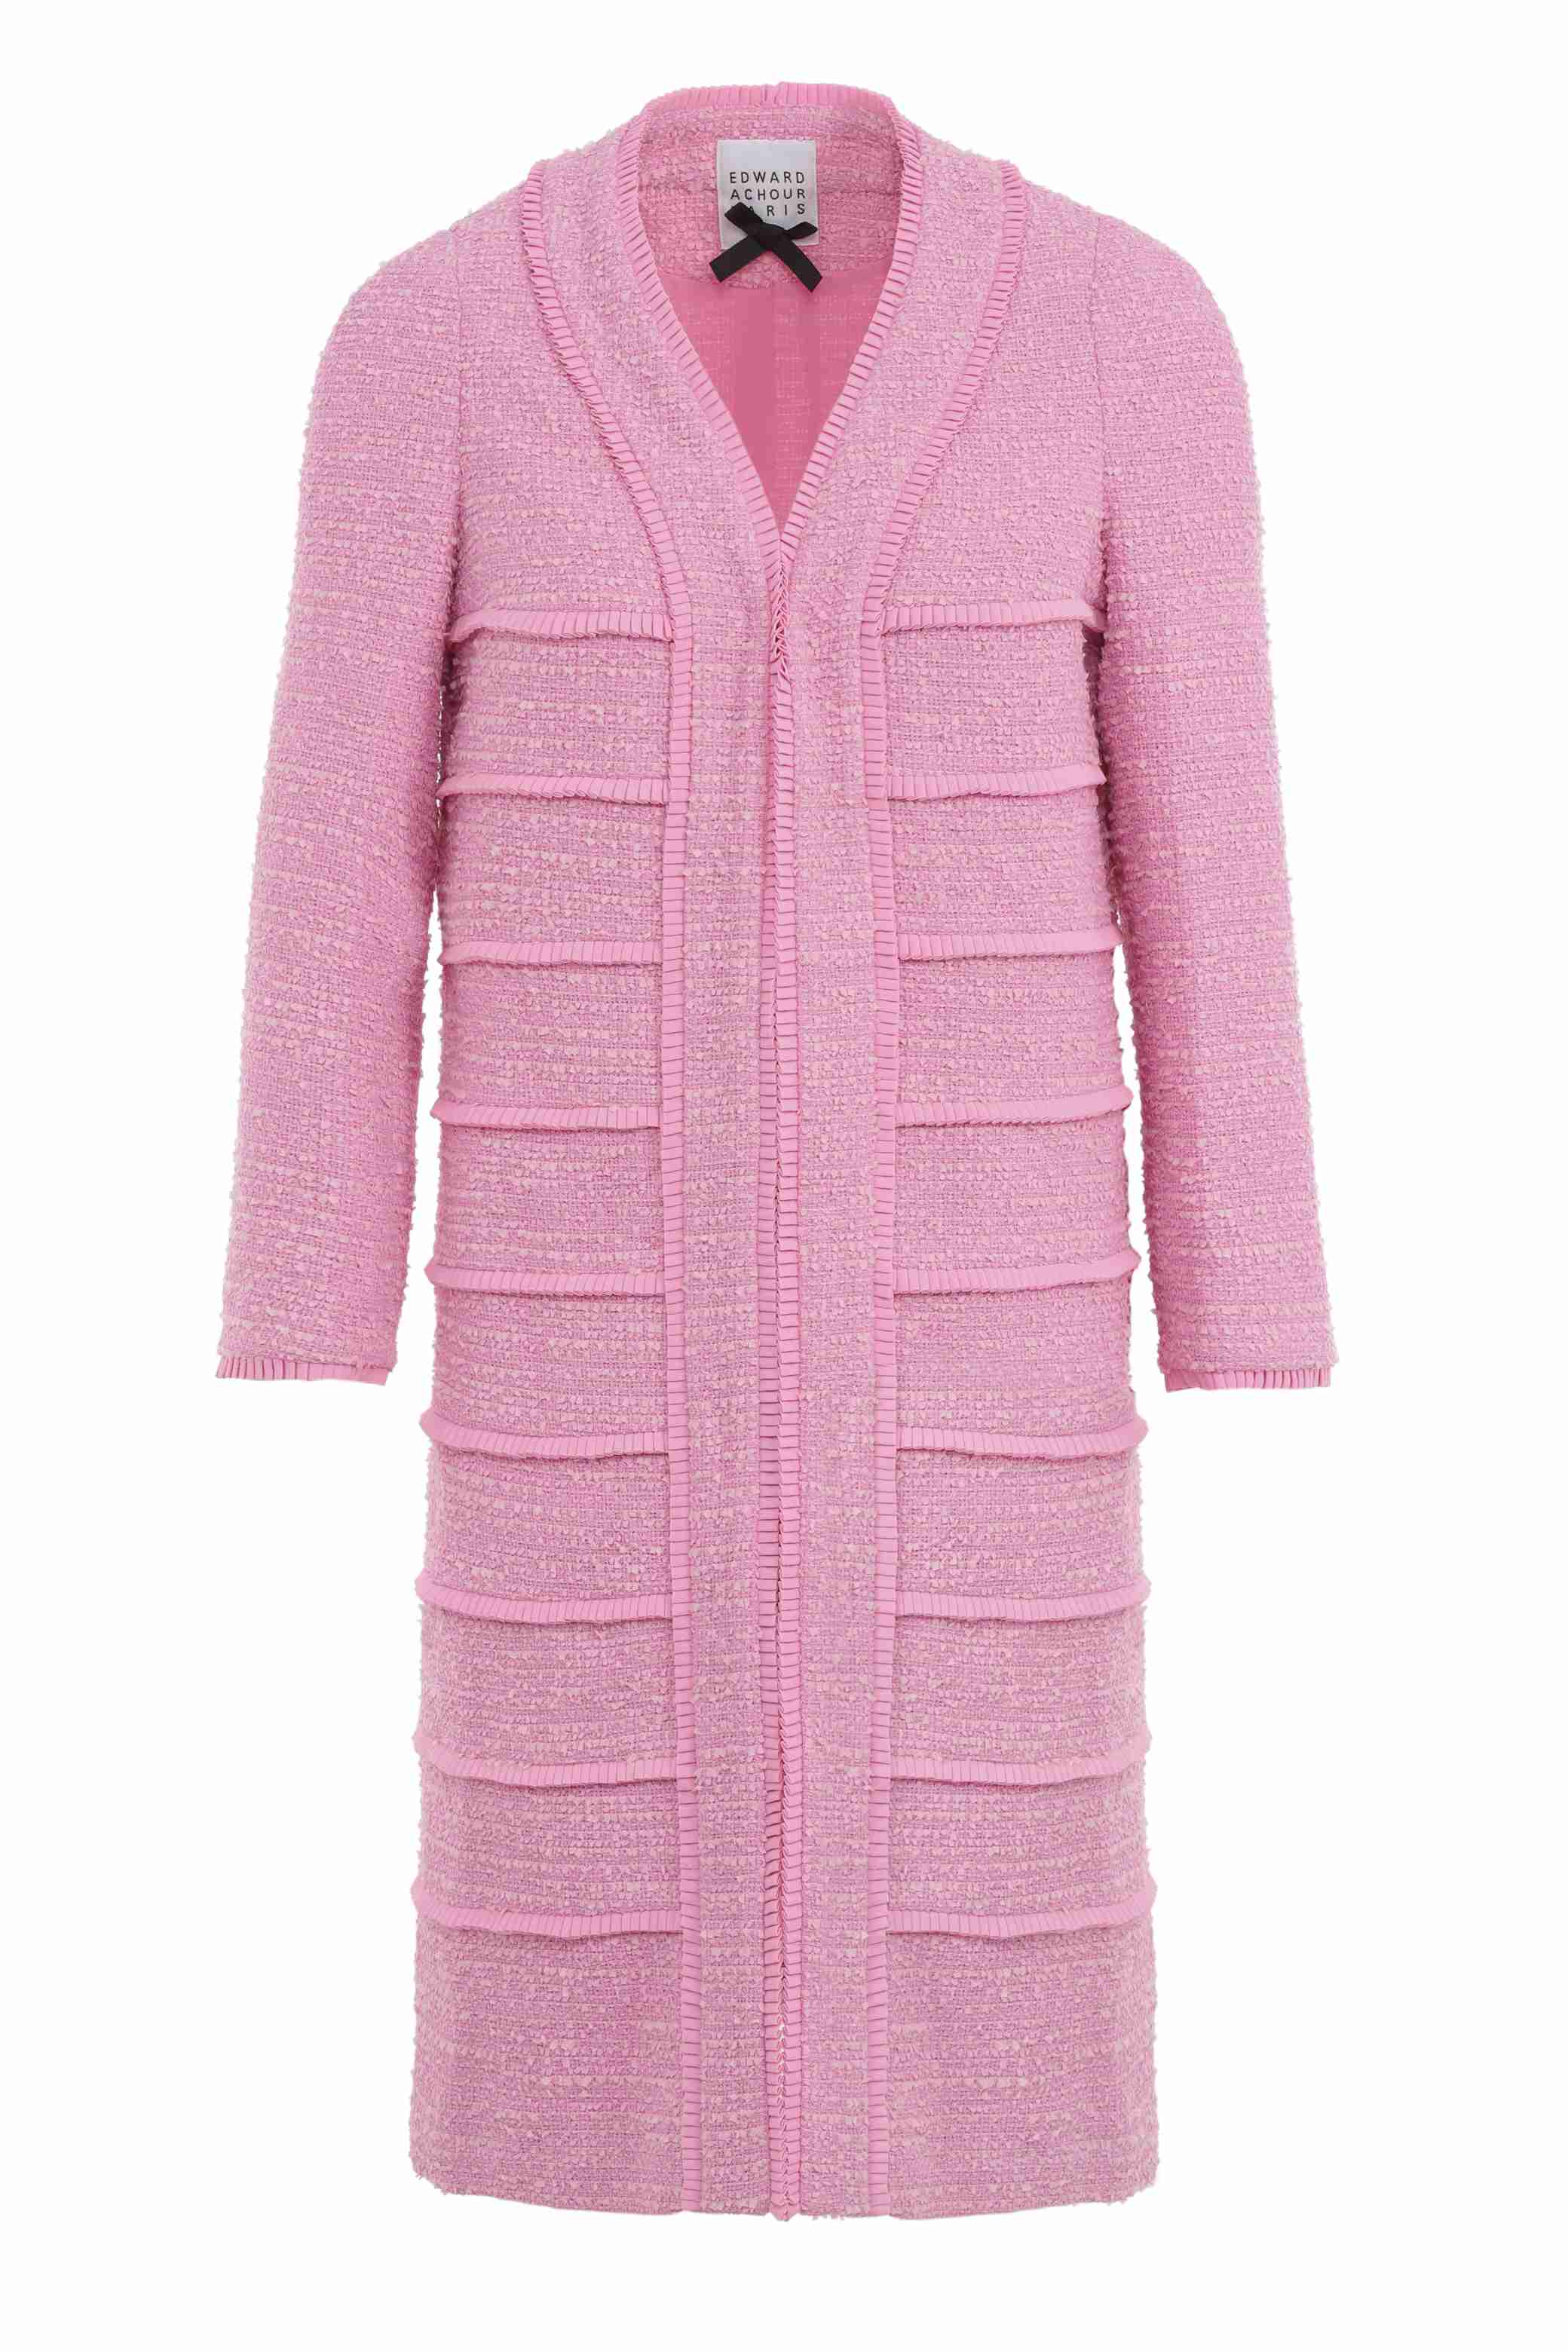 Manteau léger en natté très fin rose